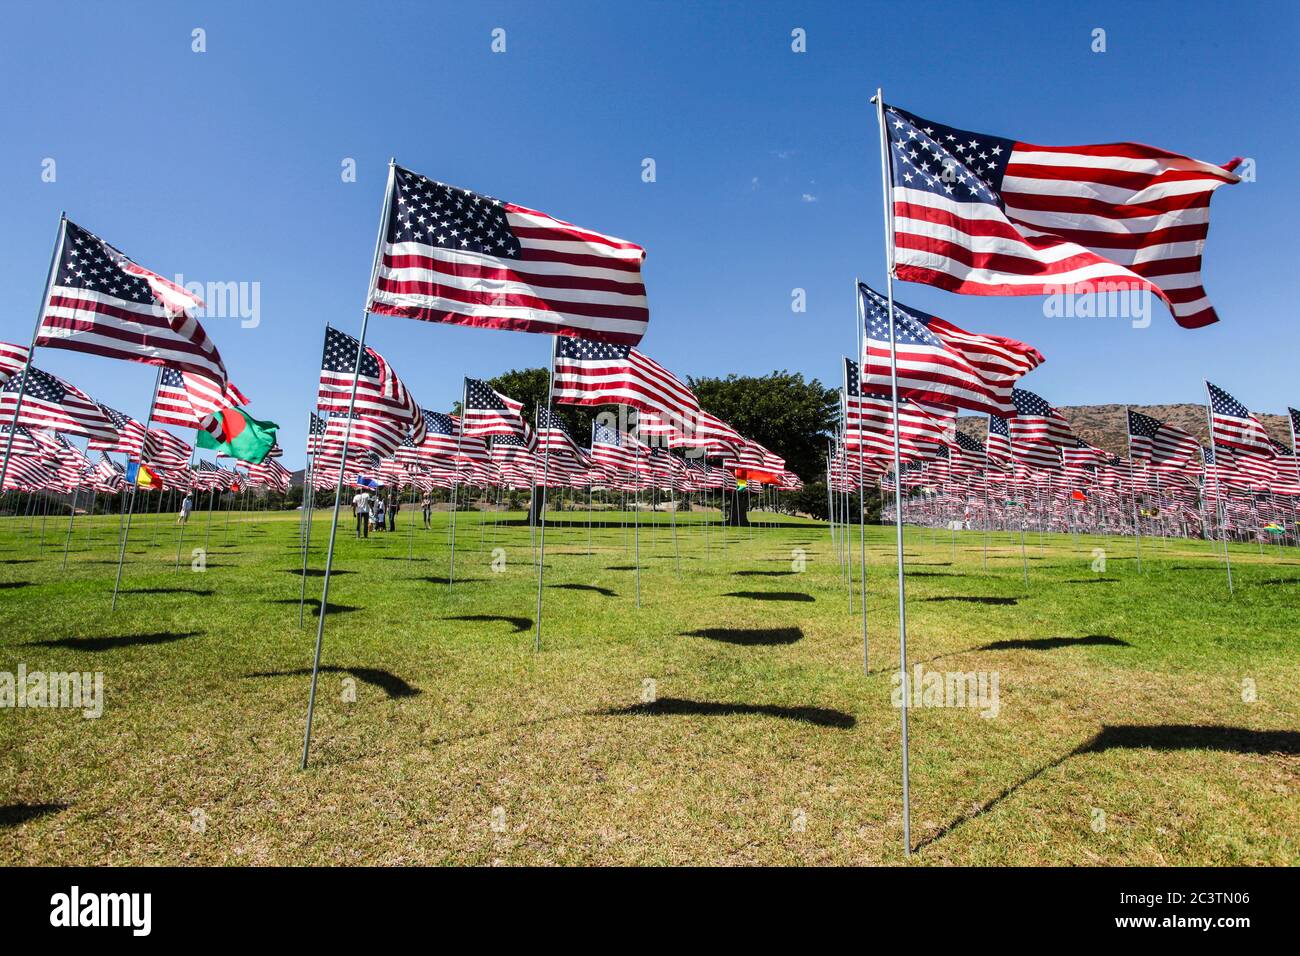 Amerikanische Flaggen fliegen auf dem Campus-Gelände, um den unschuldigen Opfern des Angriffs auf das World Trade Center, das Pentagon und Flug 93 von 9/11 zu gedenken. Stockfoto